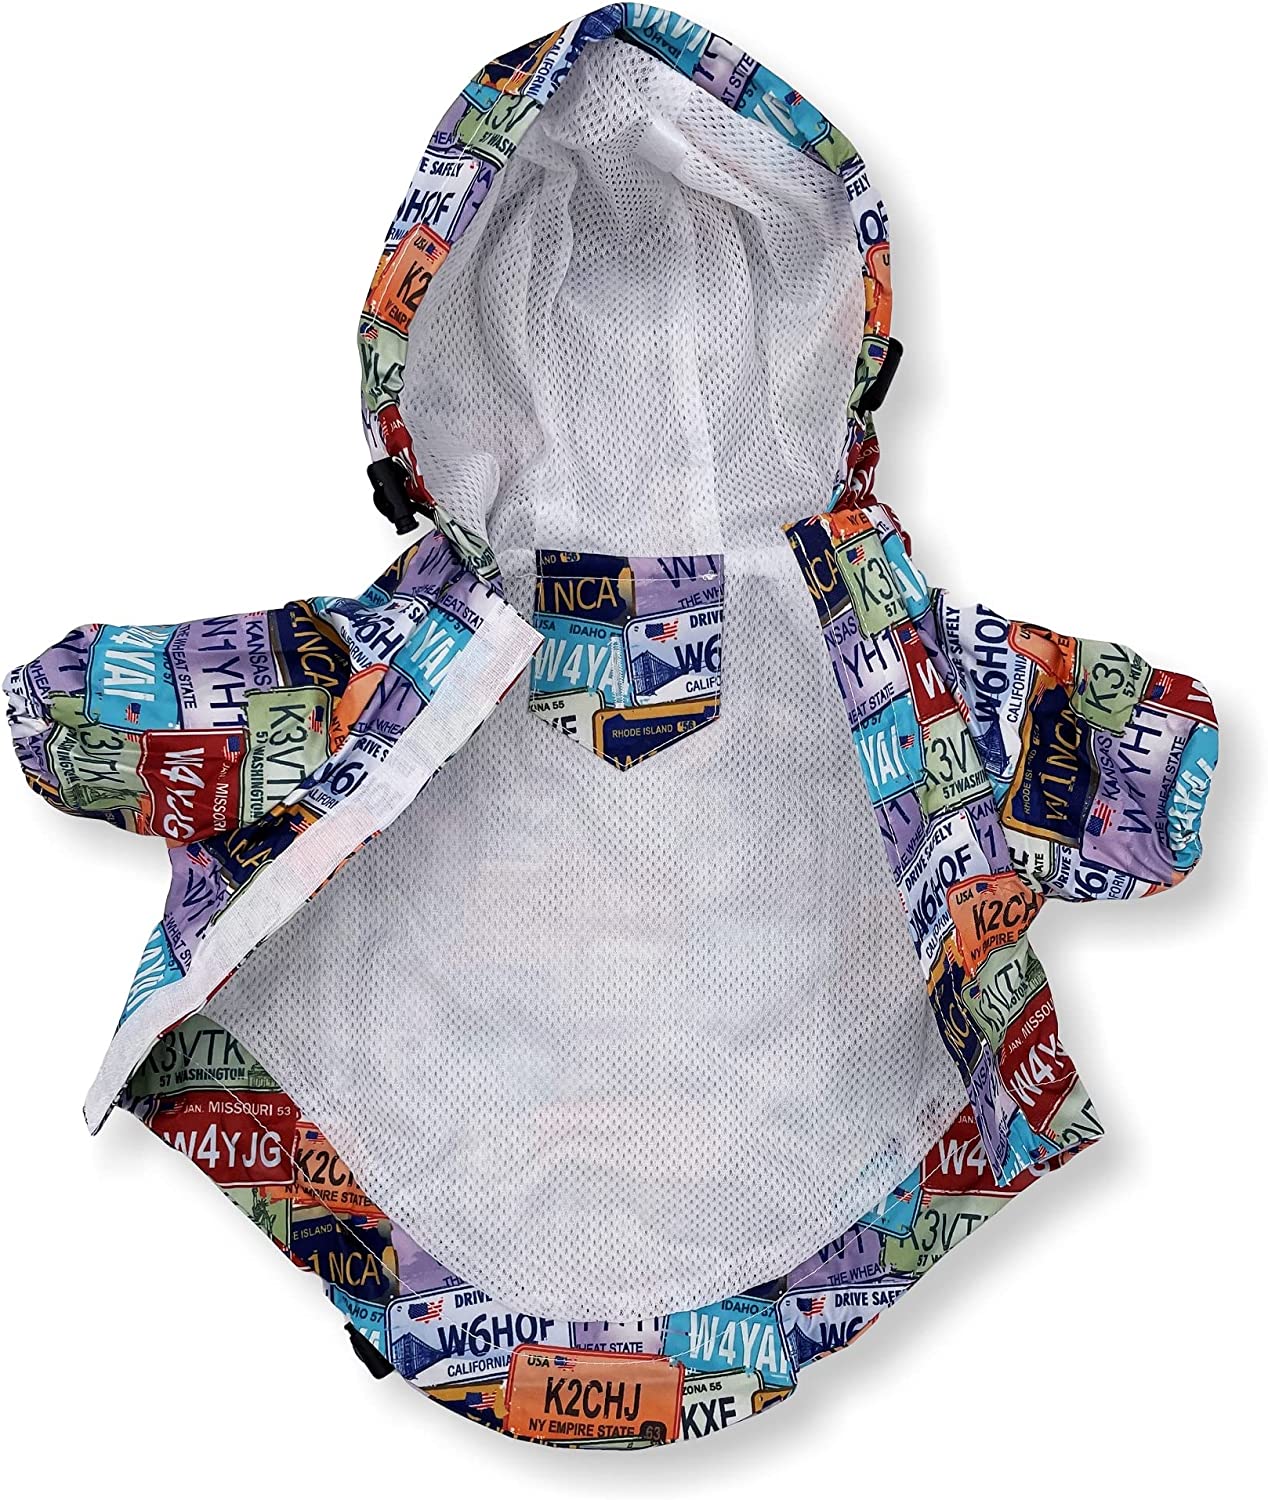  کت بارانی حیوان خانگی ساخته شده از پارچه ضد آب برای خشک و گرم نگه داشتن حیوان خانگی شما در روزهای بارانی.